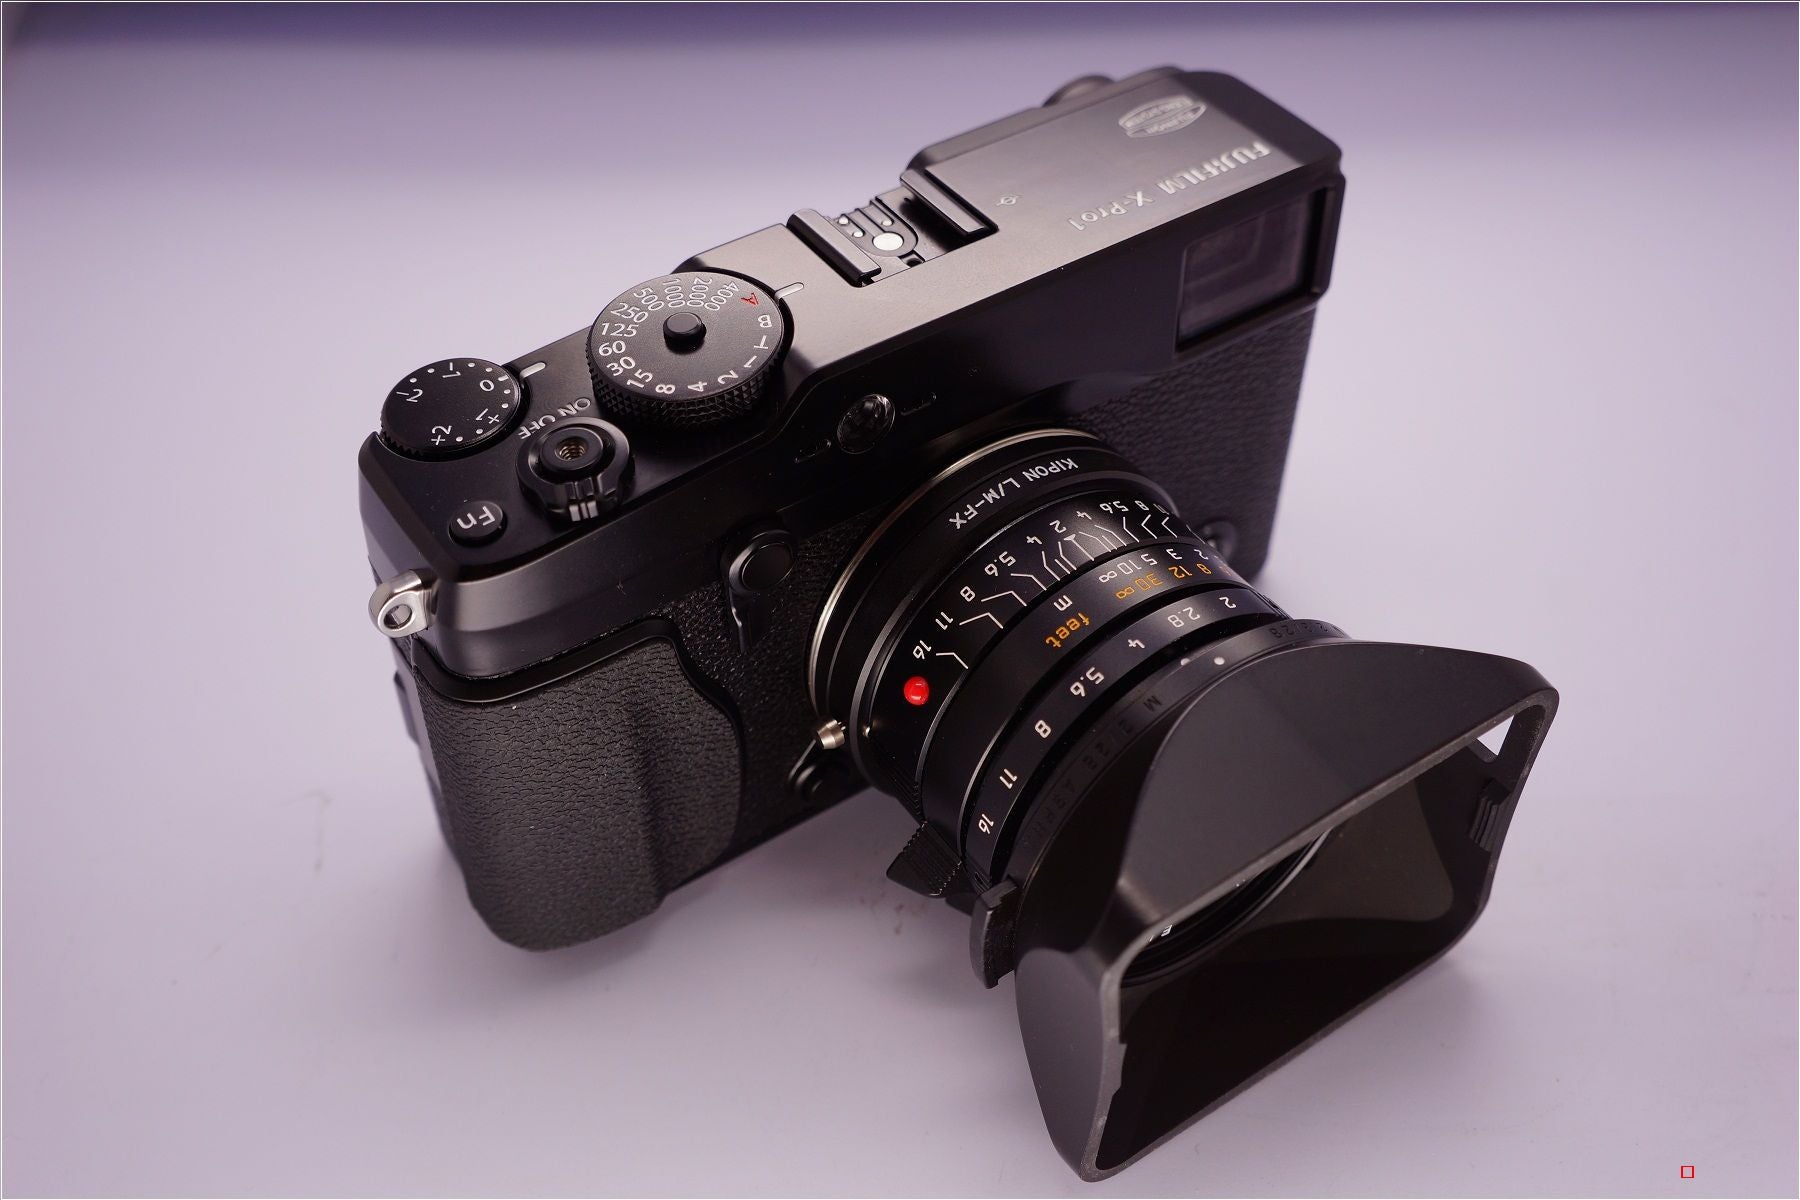 販売大セール FUJIFILM M MOUNT ADAPTER デジタルカメラ